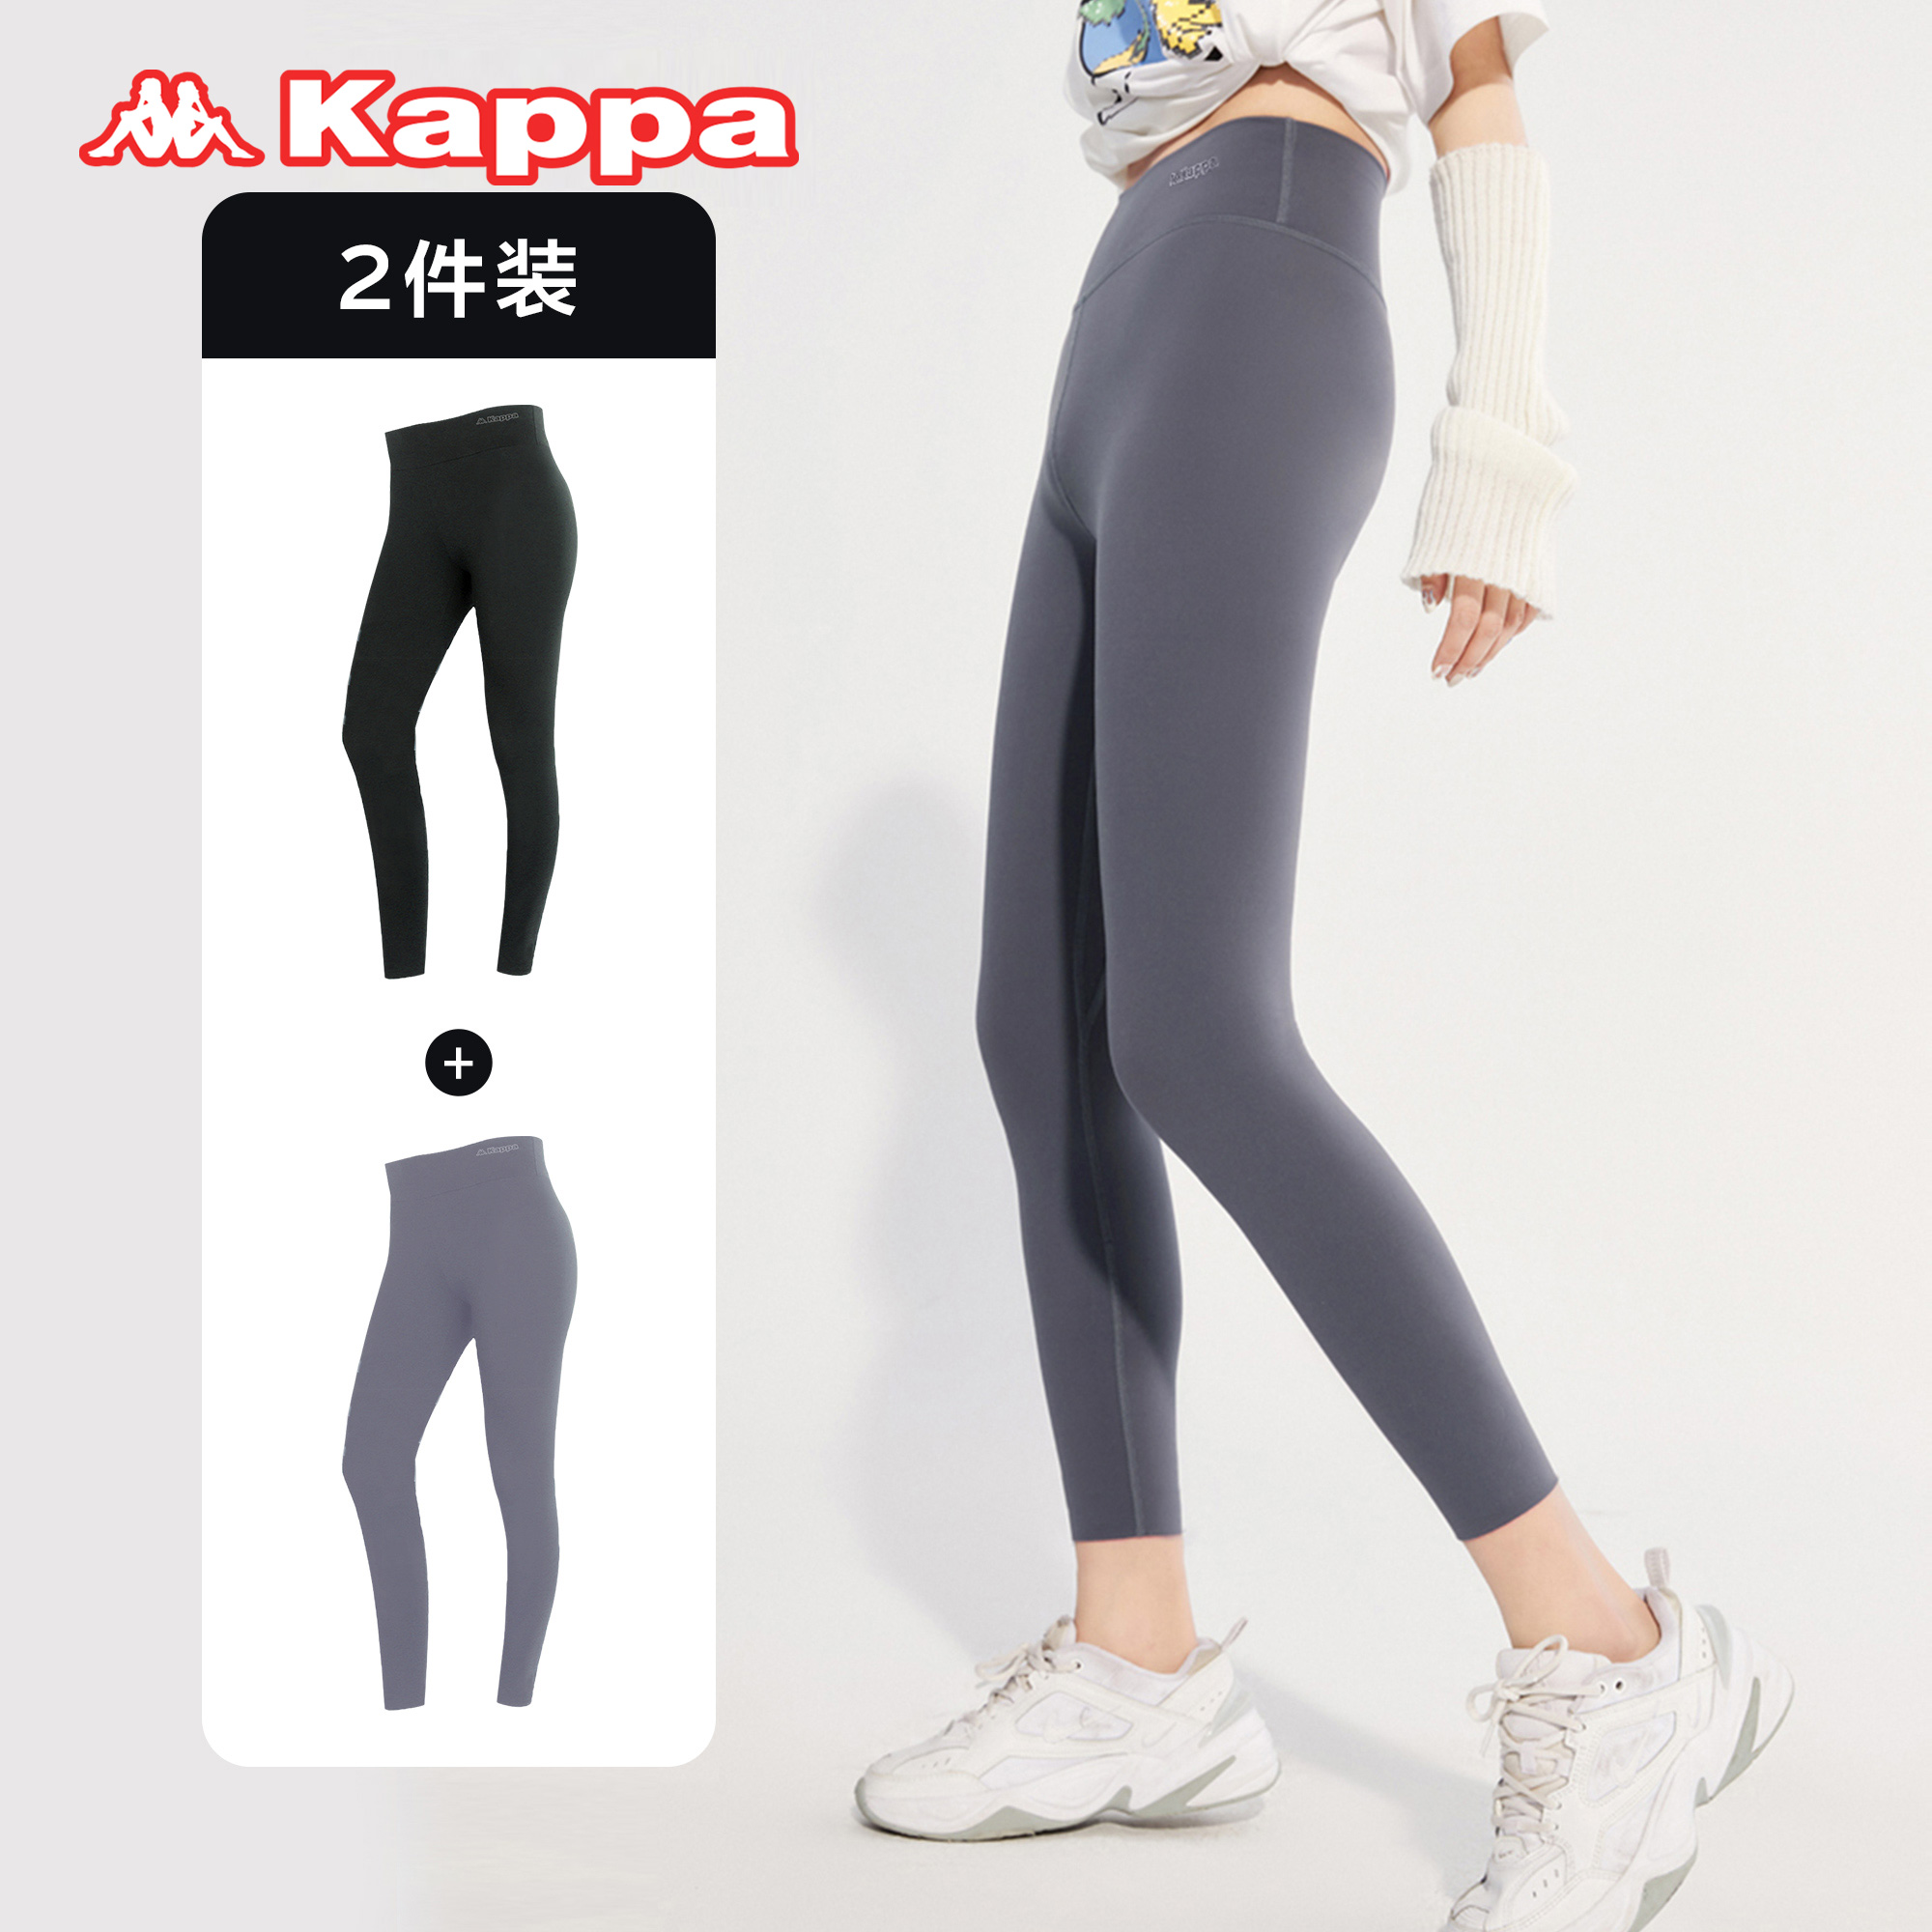 Kappa 卡帕 女士运动鲨鱼裤长裤 KP1L02 2条装